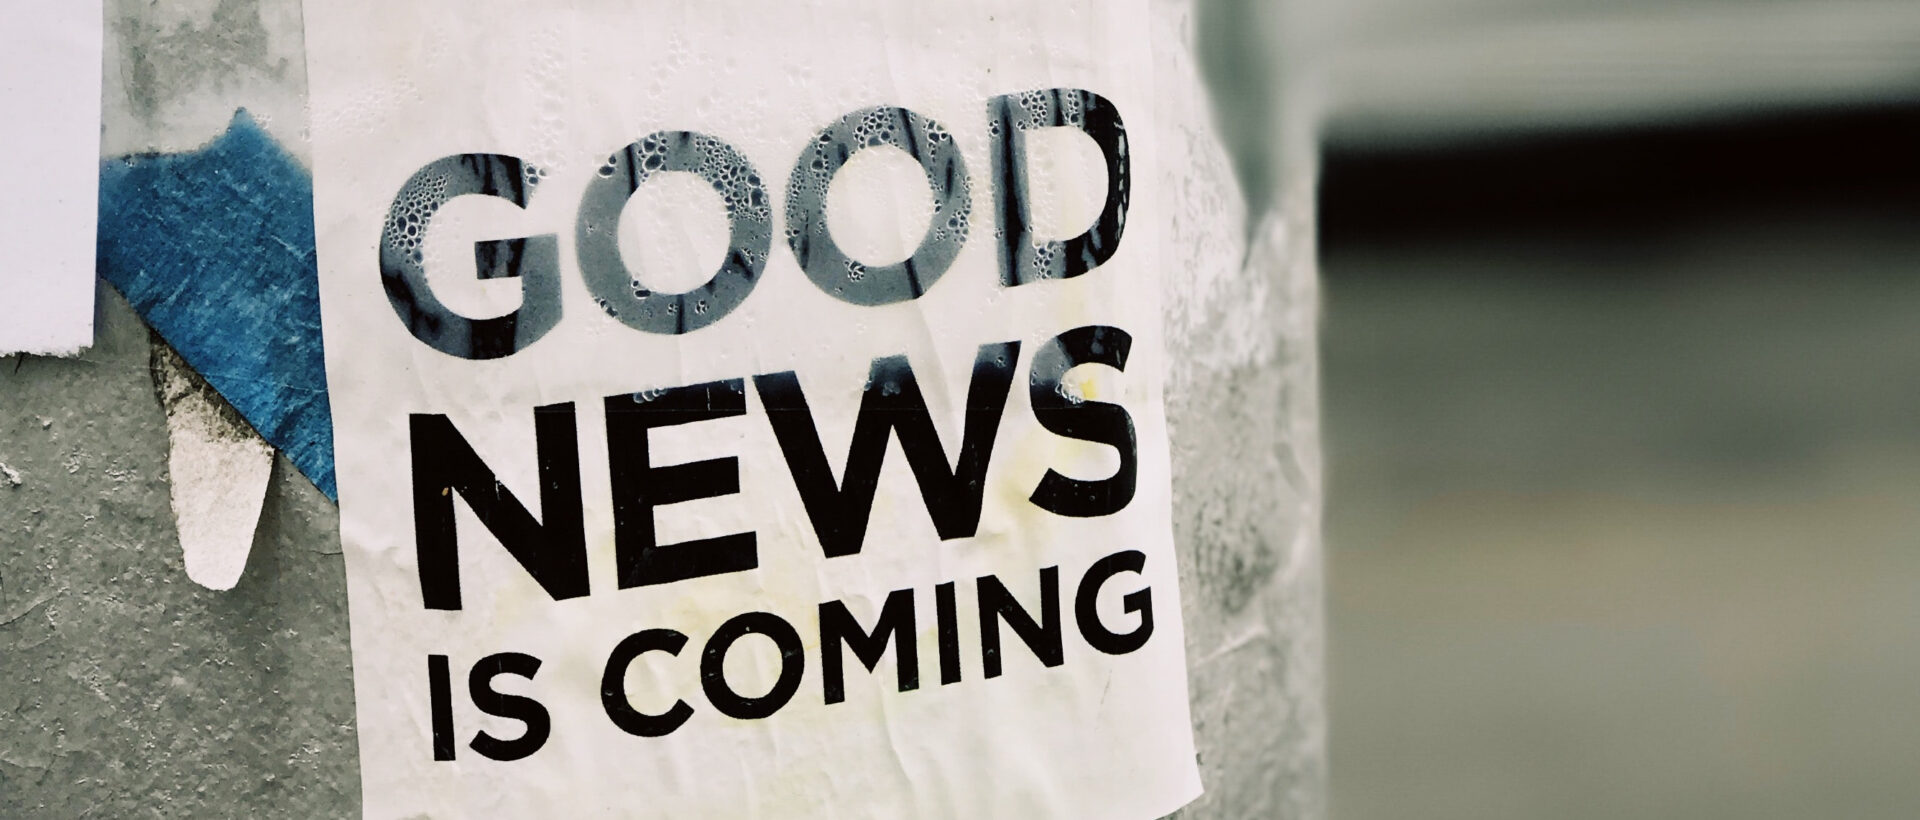 An einer Plakatsäule hängt ein Zettel, auf dem in grossen, schwarzen Buchstaben "Good News is Coming" gedruckt ist.